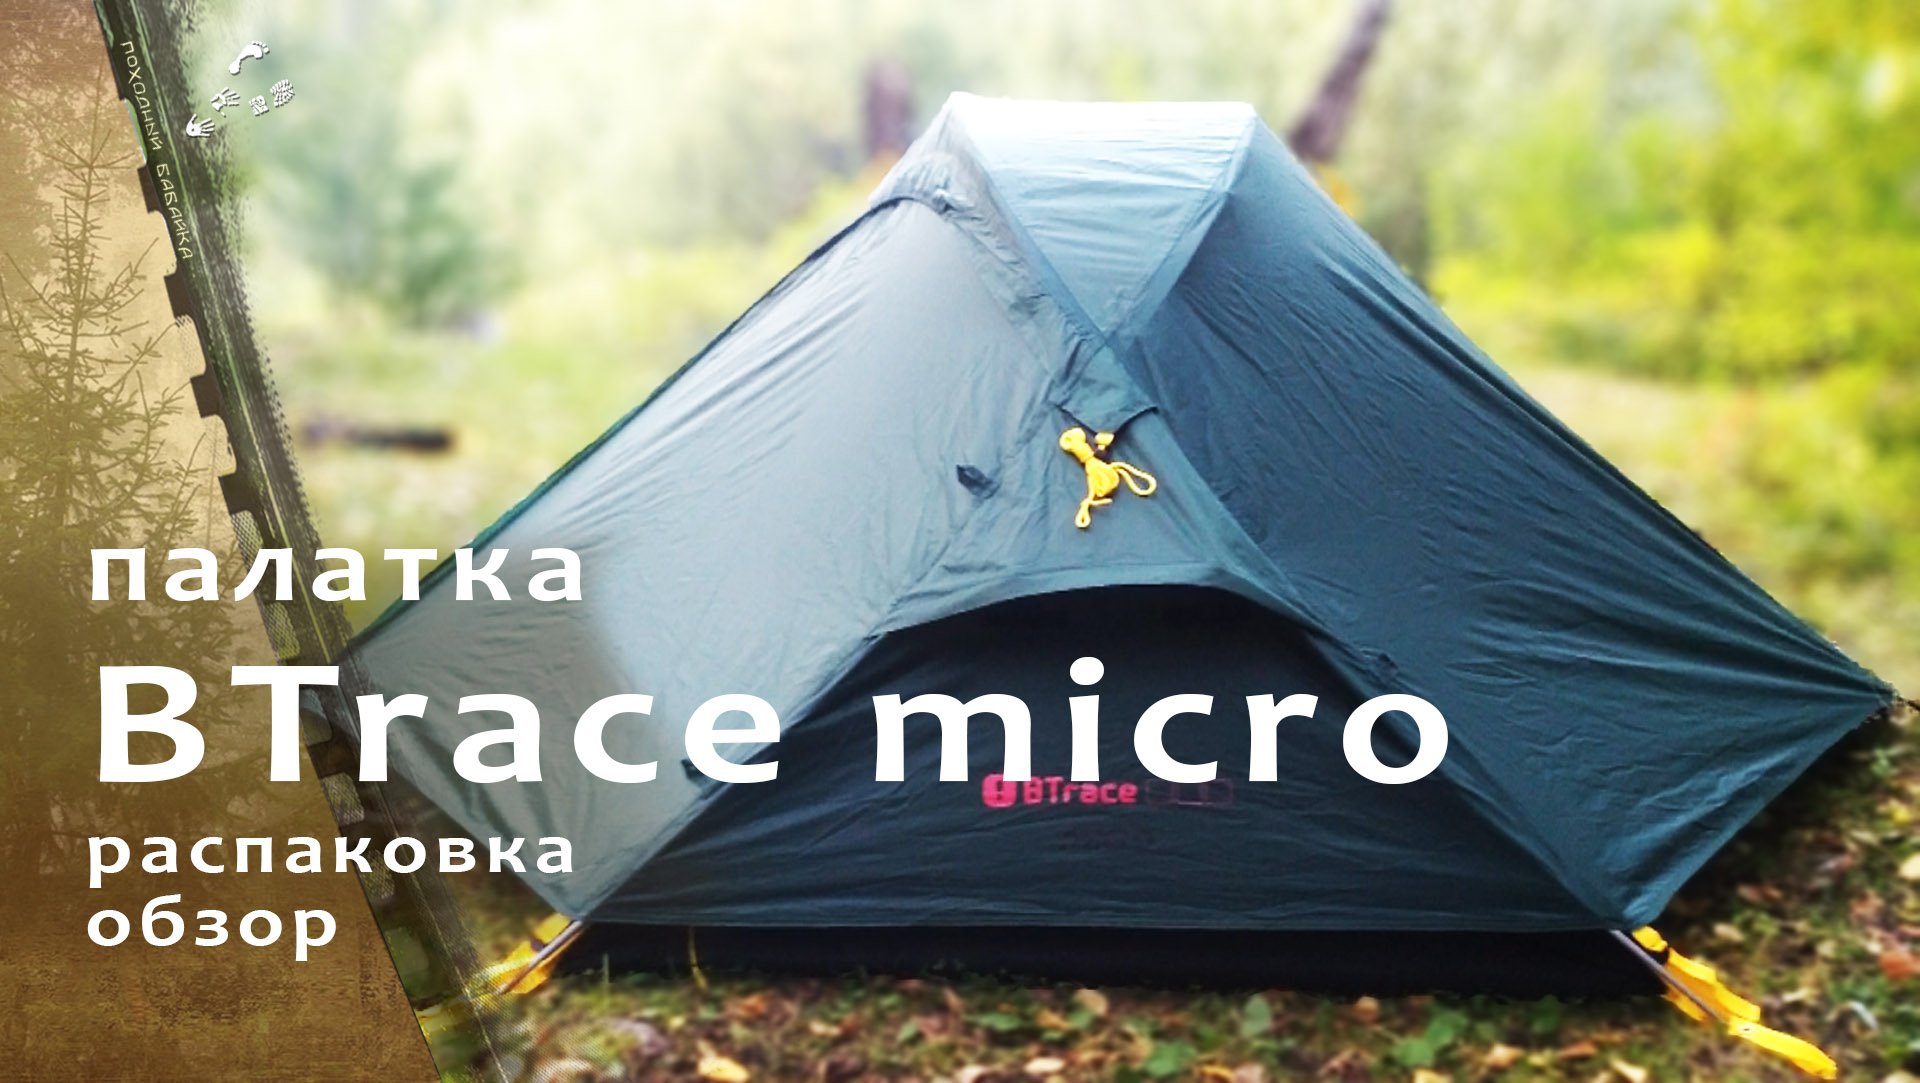 Двухместная палатка BTrace Micro / распаковка.